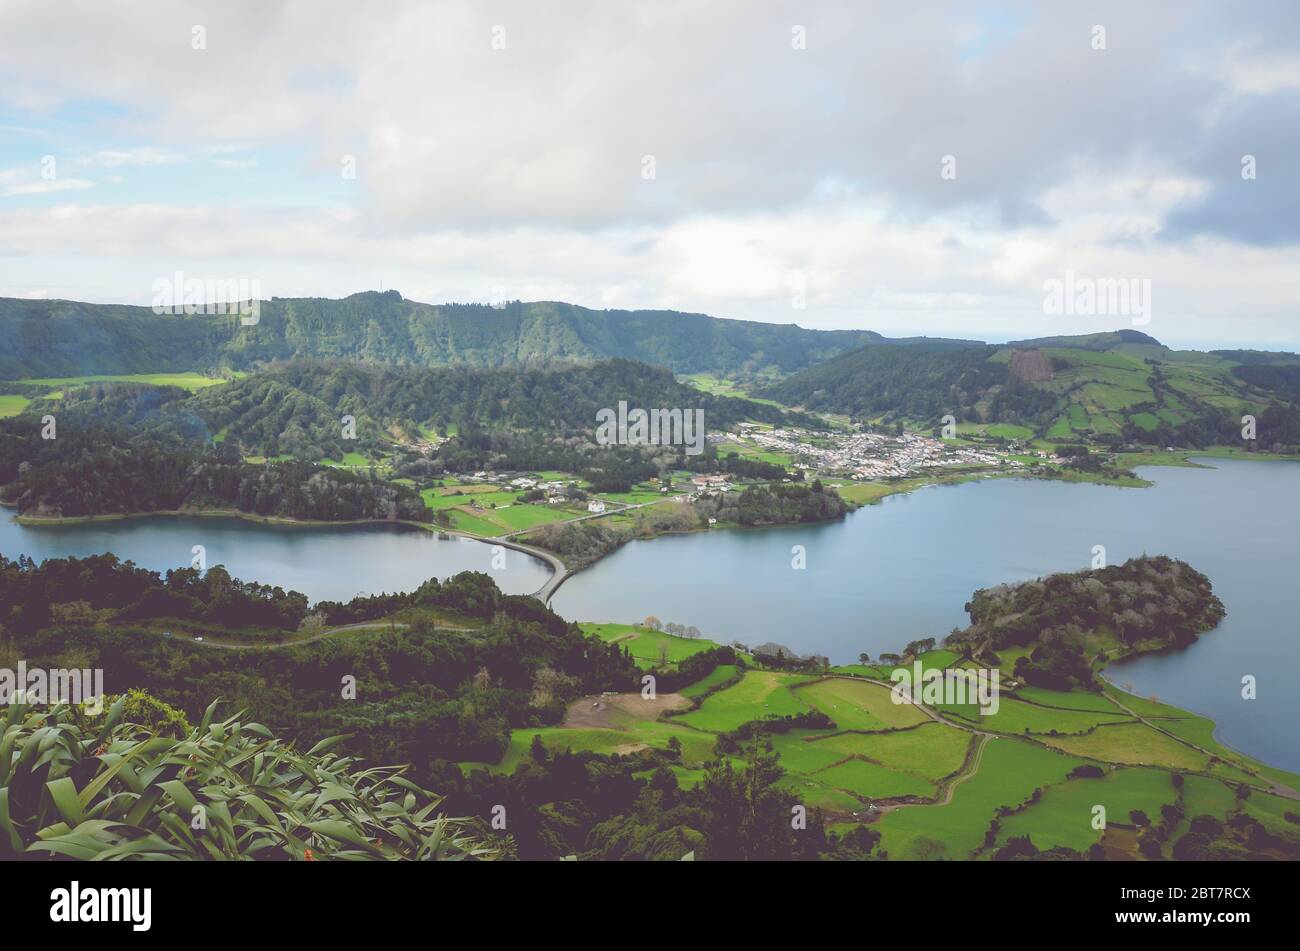 Herrlicher Blick auf die Lagoa Azul und das Dorf Sete Cidades vom Aussichtspunkt Miradouro do Cerrado das Freiras in Azoren, Portugal. Seen umgeben von grünen Feldern und Wald. Horizontales Foto. Stockfoto